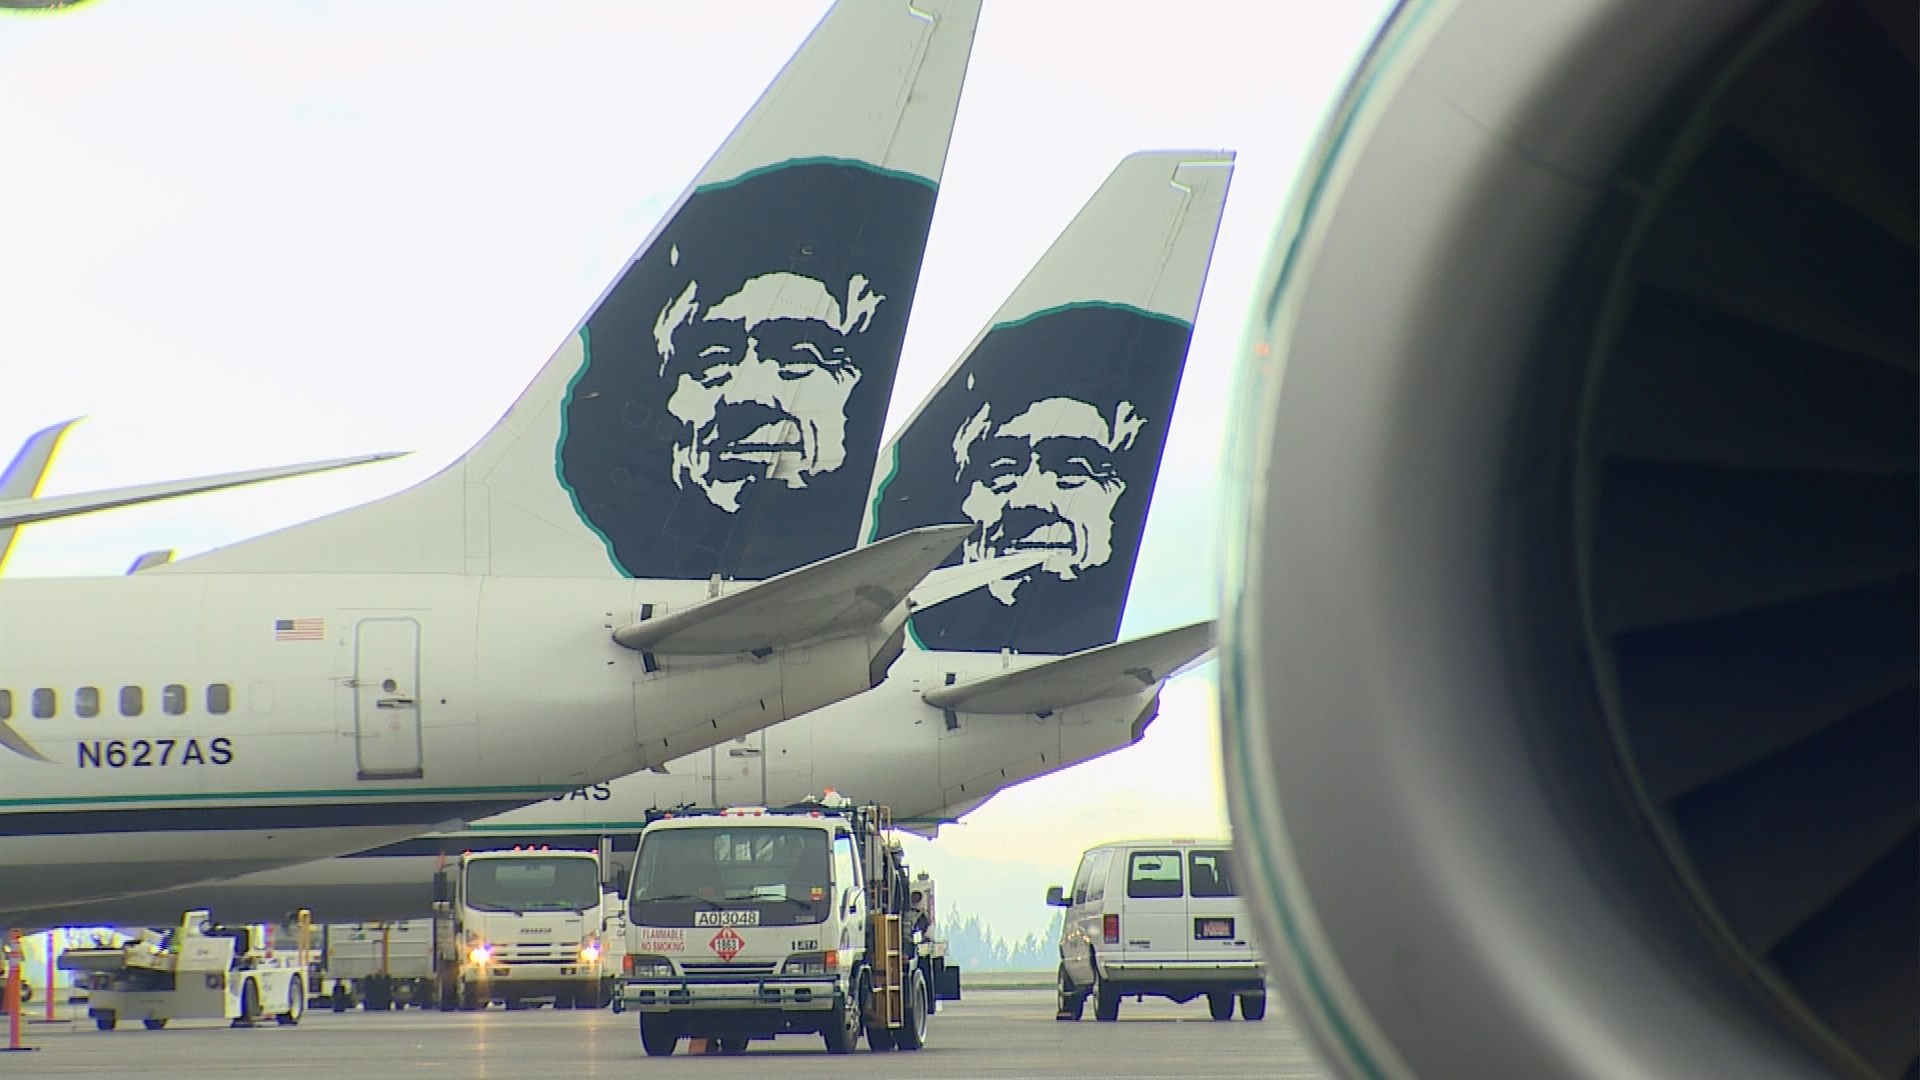 Naked passenger prompts Alaska Airlines flight return to 